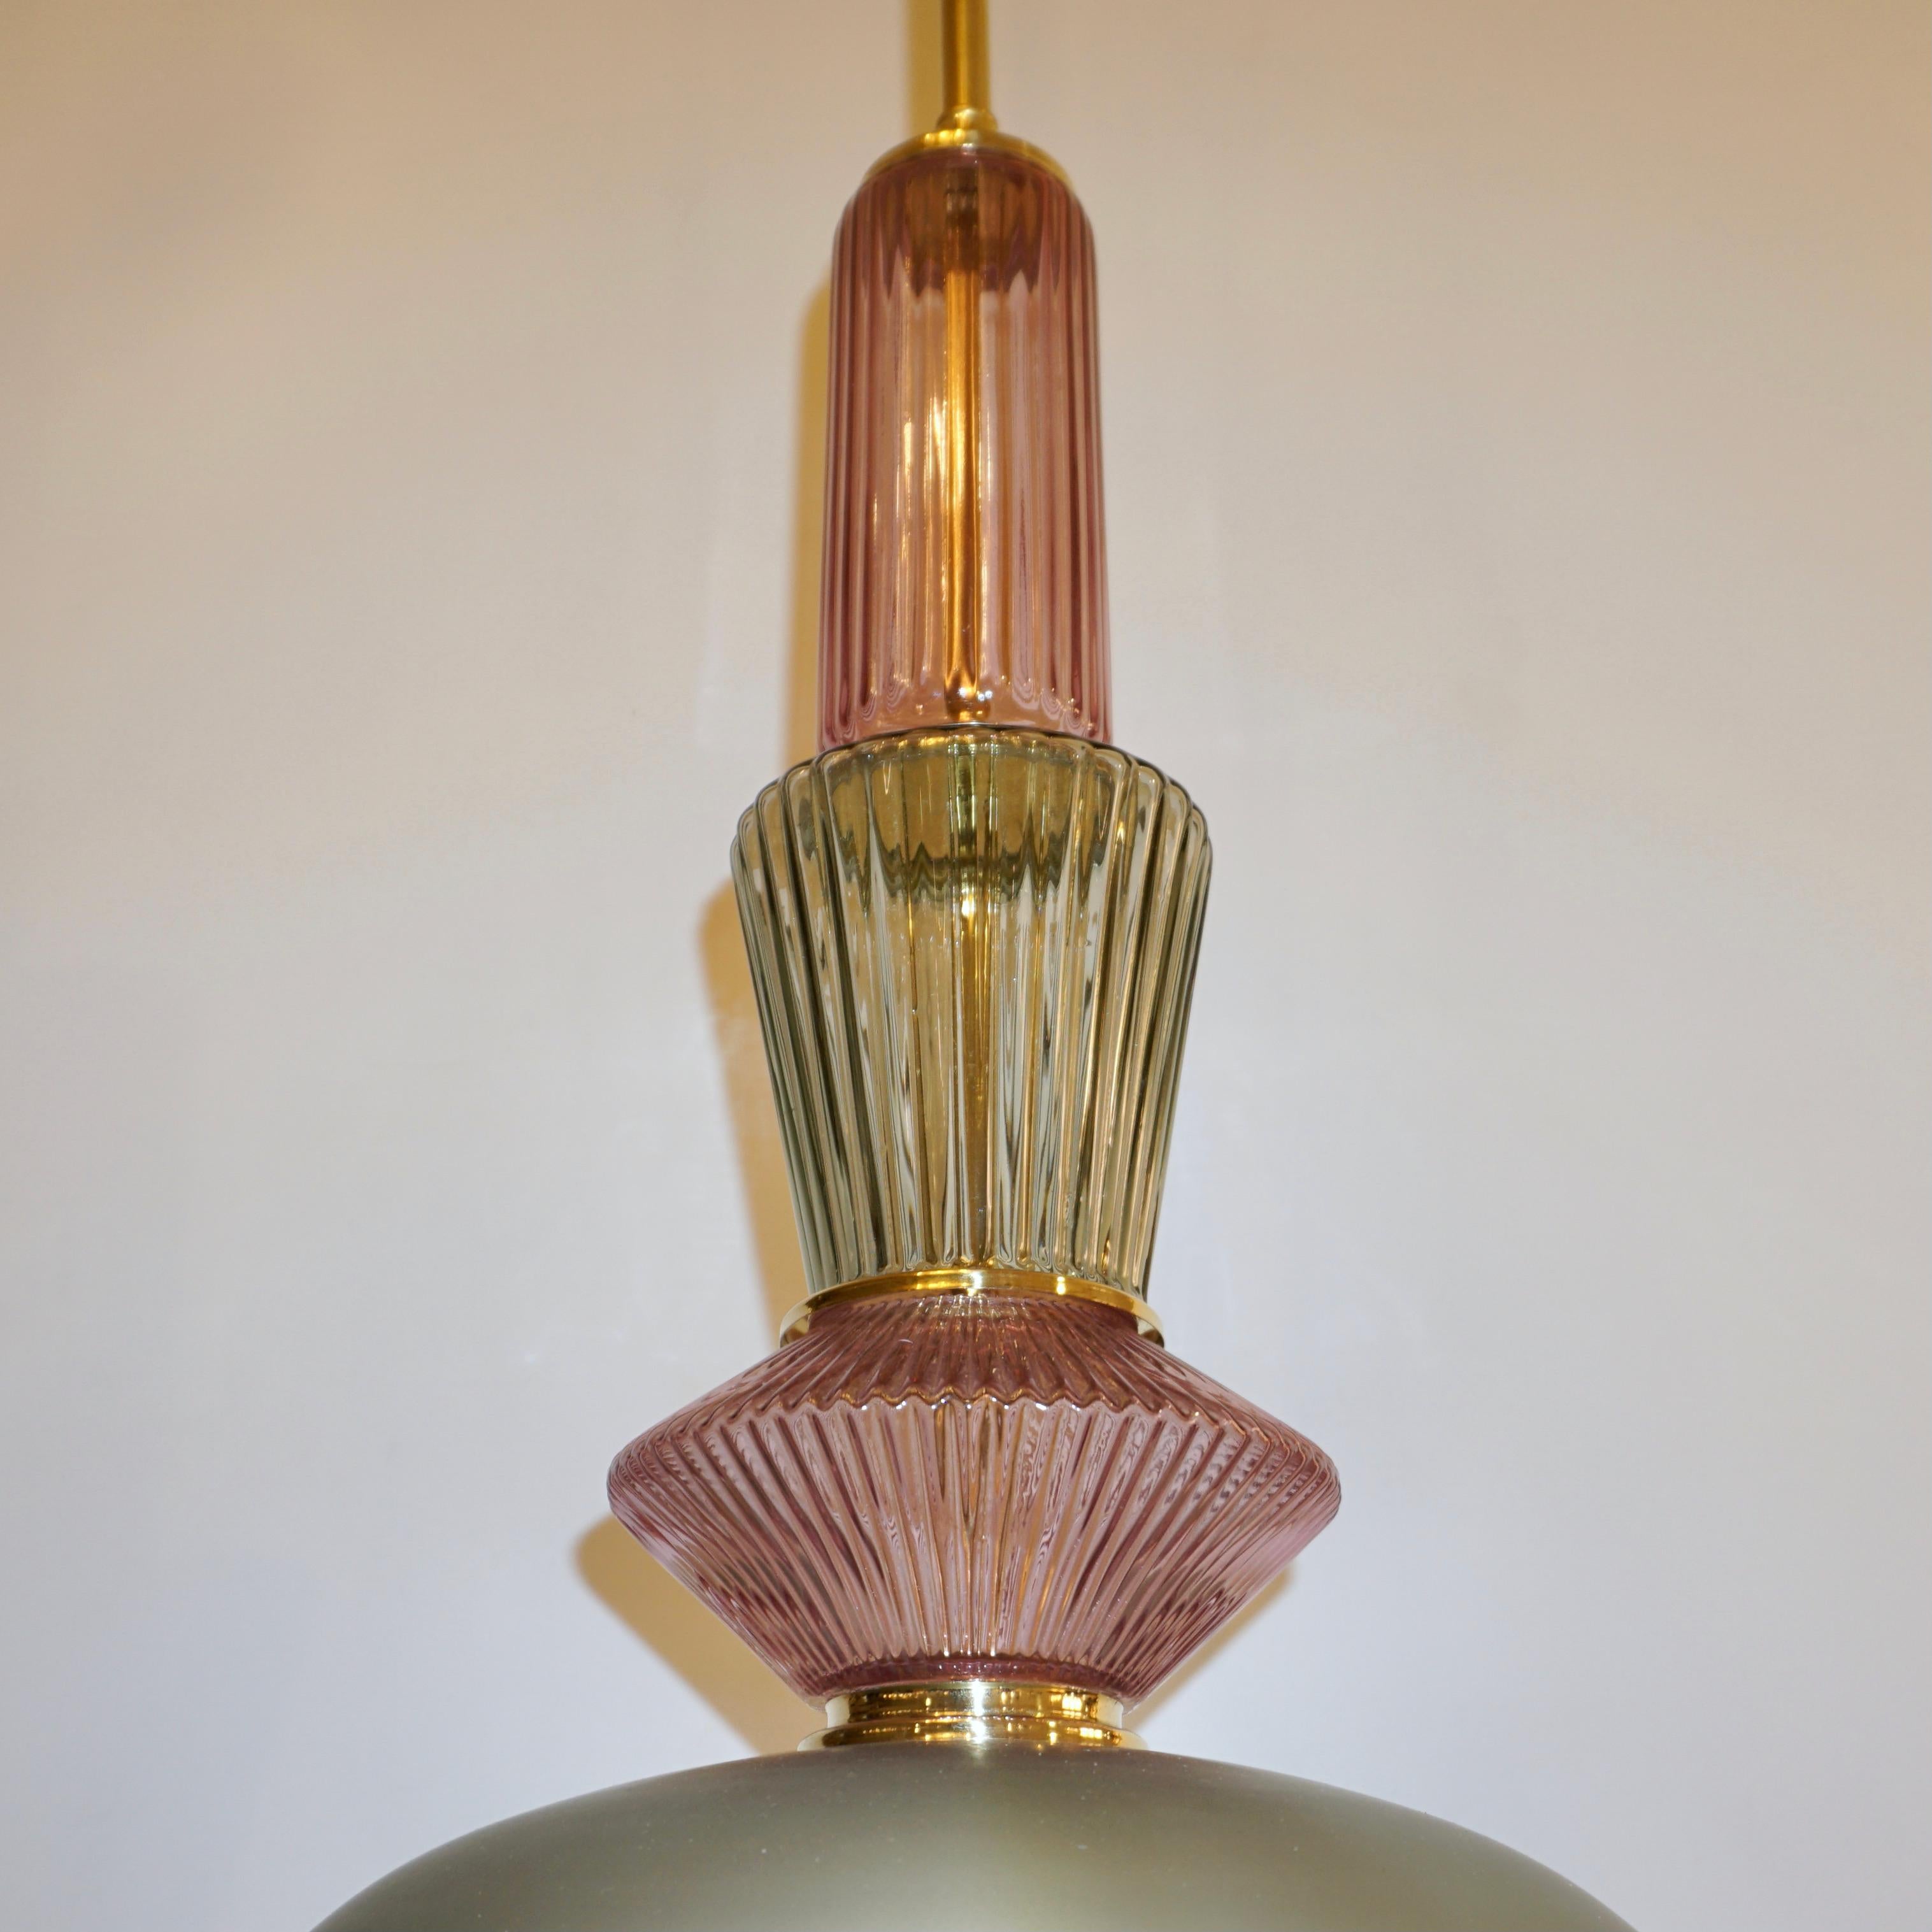 Spaß und elegante italienische zeitgenössische maßgeschneiderte Kronleuchter, komplett handgefertigt, der organischen modernen Design, bestehend aus einer Reihe von Elementen: handgeschnittene Juwel wie geriffelte Murano-Glas-Komponenten in lila